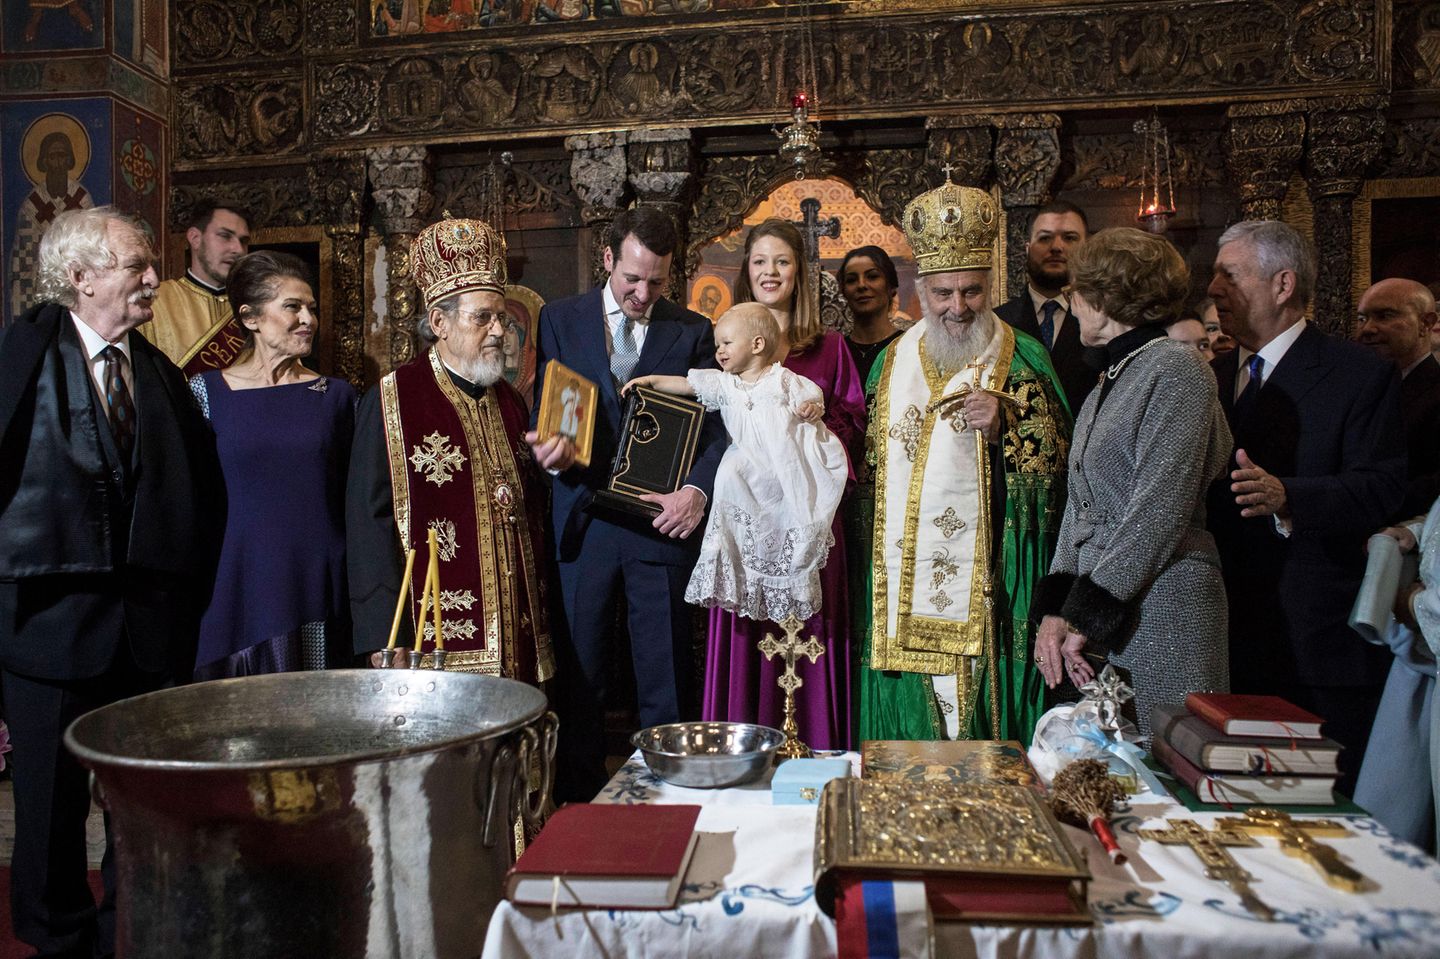 Stefans gute Laune ist sofort wieder zurück, als er nach der orthodoxen Zeremonie die Insignien in der Kapelle des Königlichen Palastes bestaunen darf.